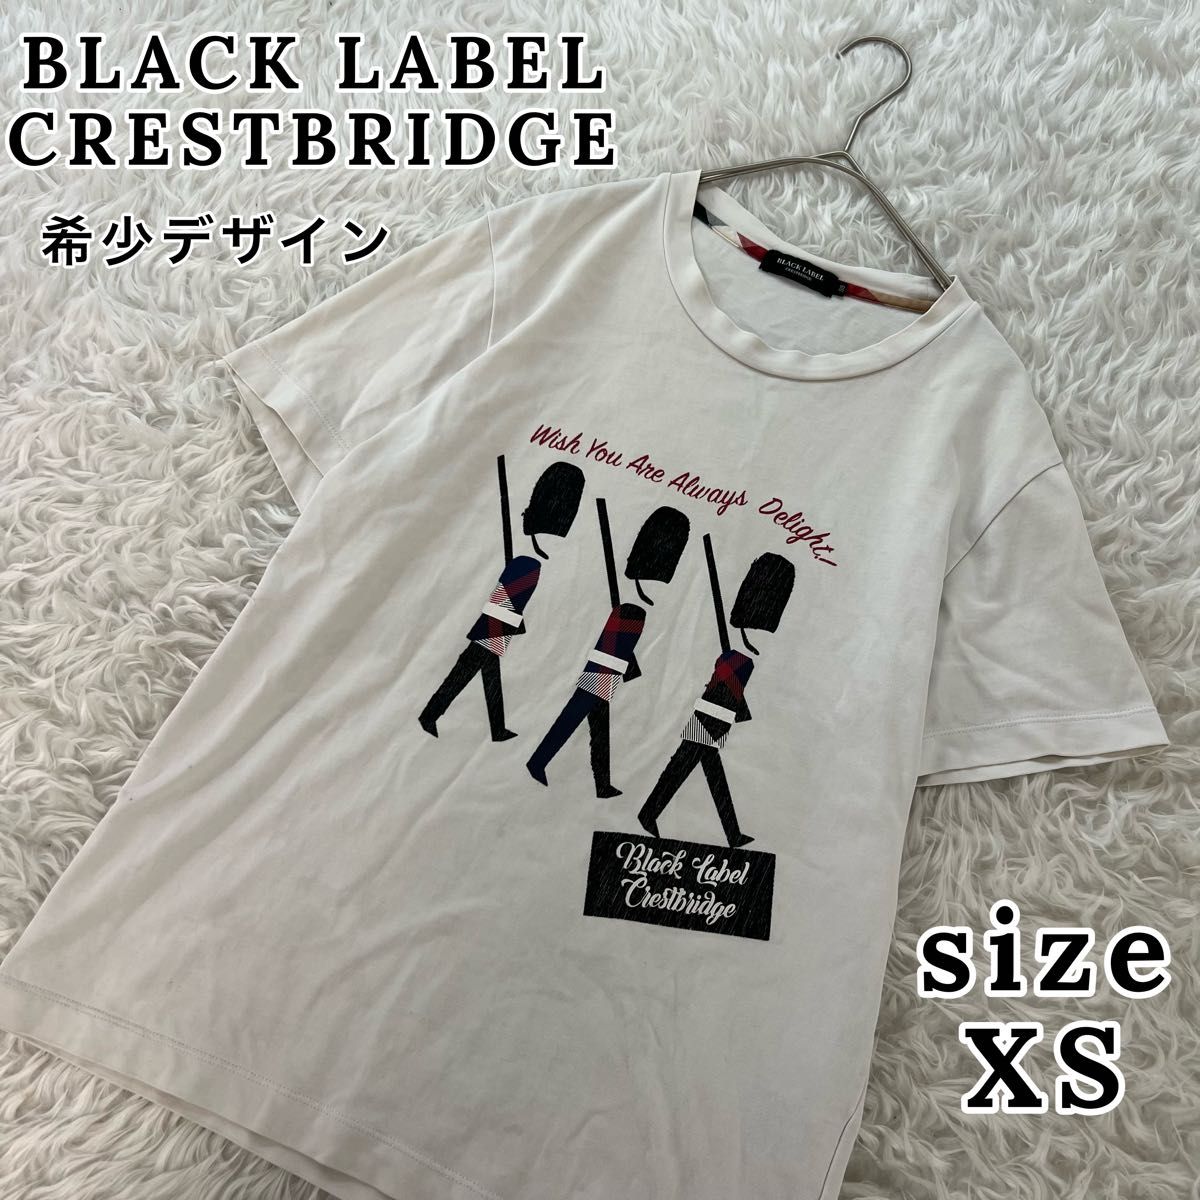 【希少】ブラックレーベルクレストブリッジ メンズ 半袖 tシャツ 白 XS Tシャツ 半袖 ホワイト